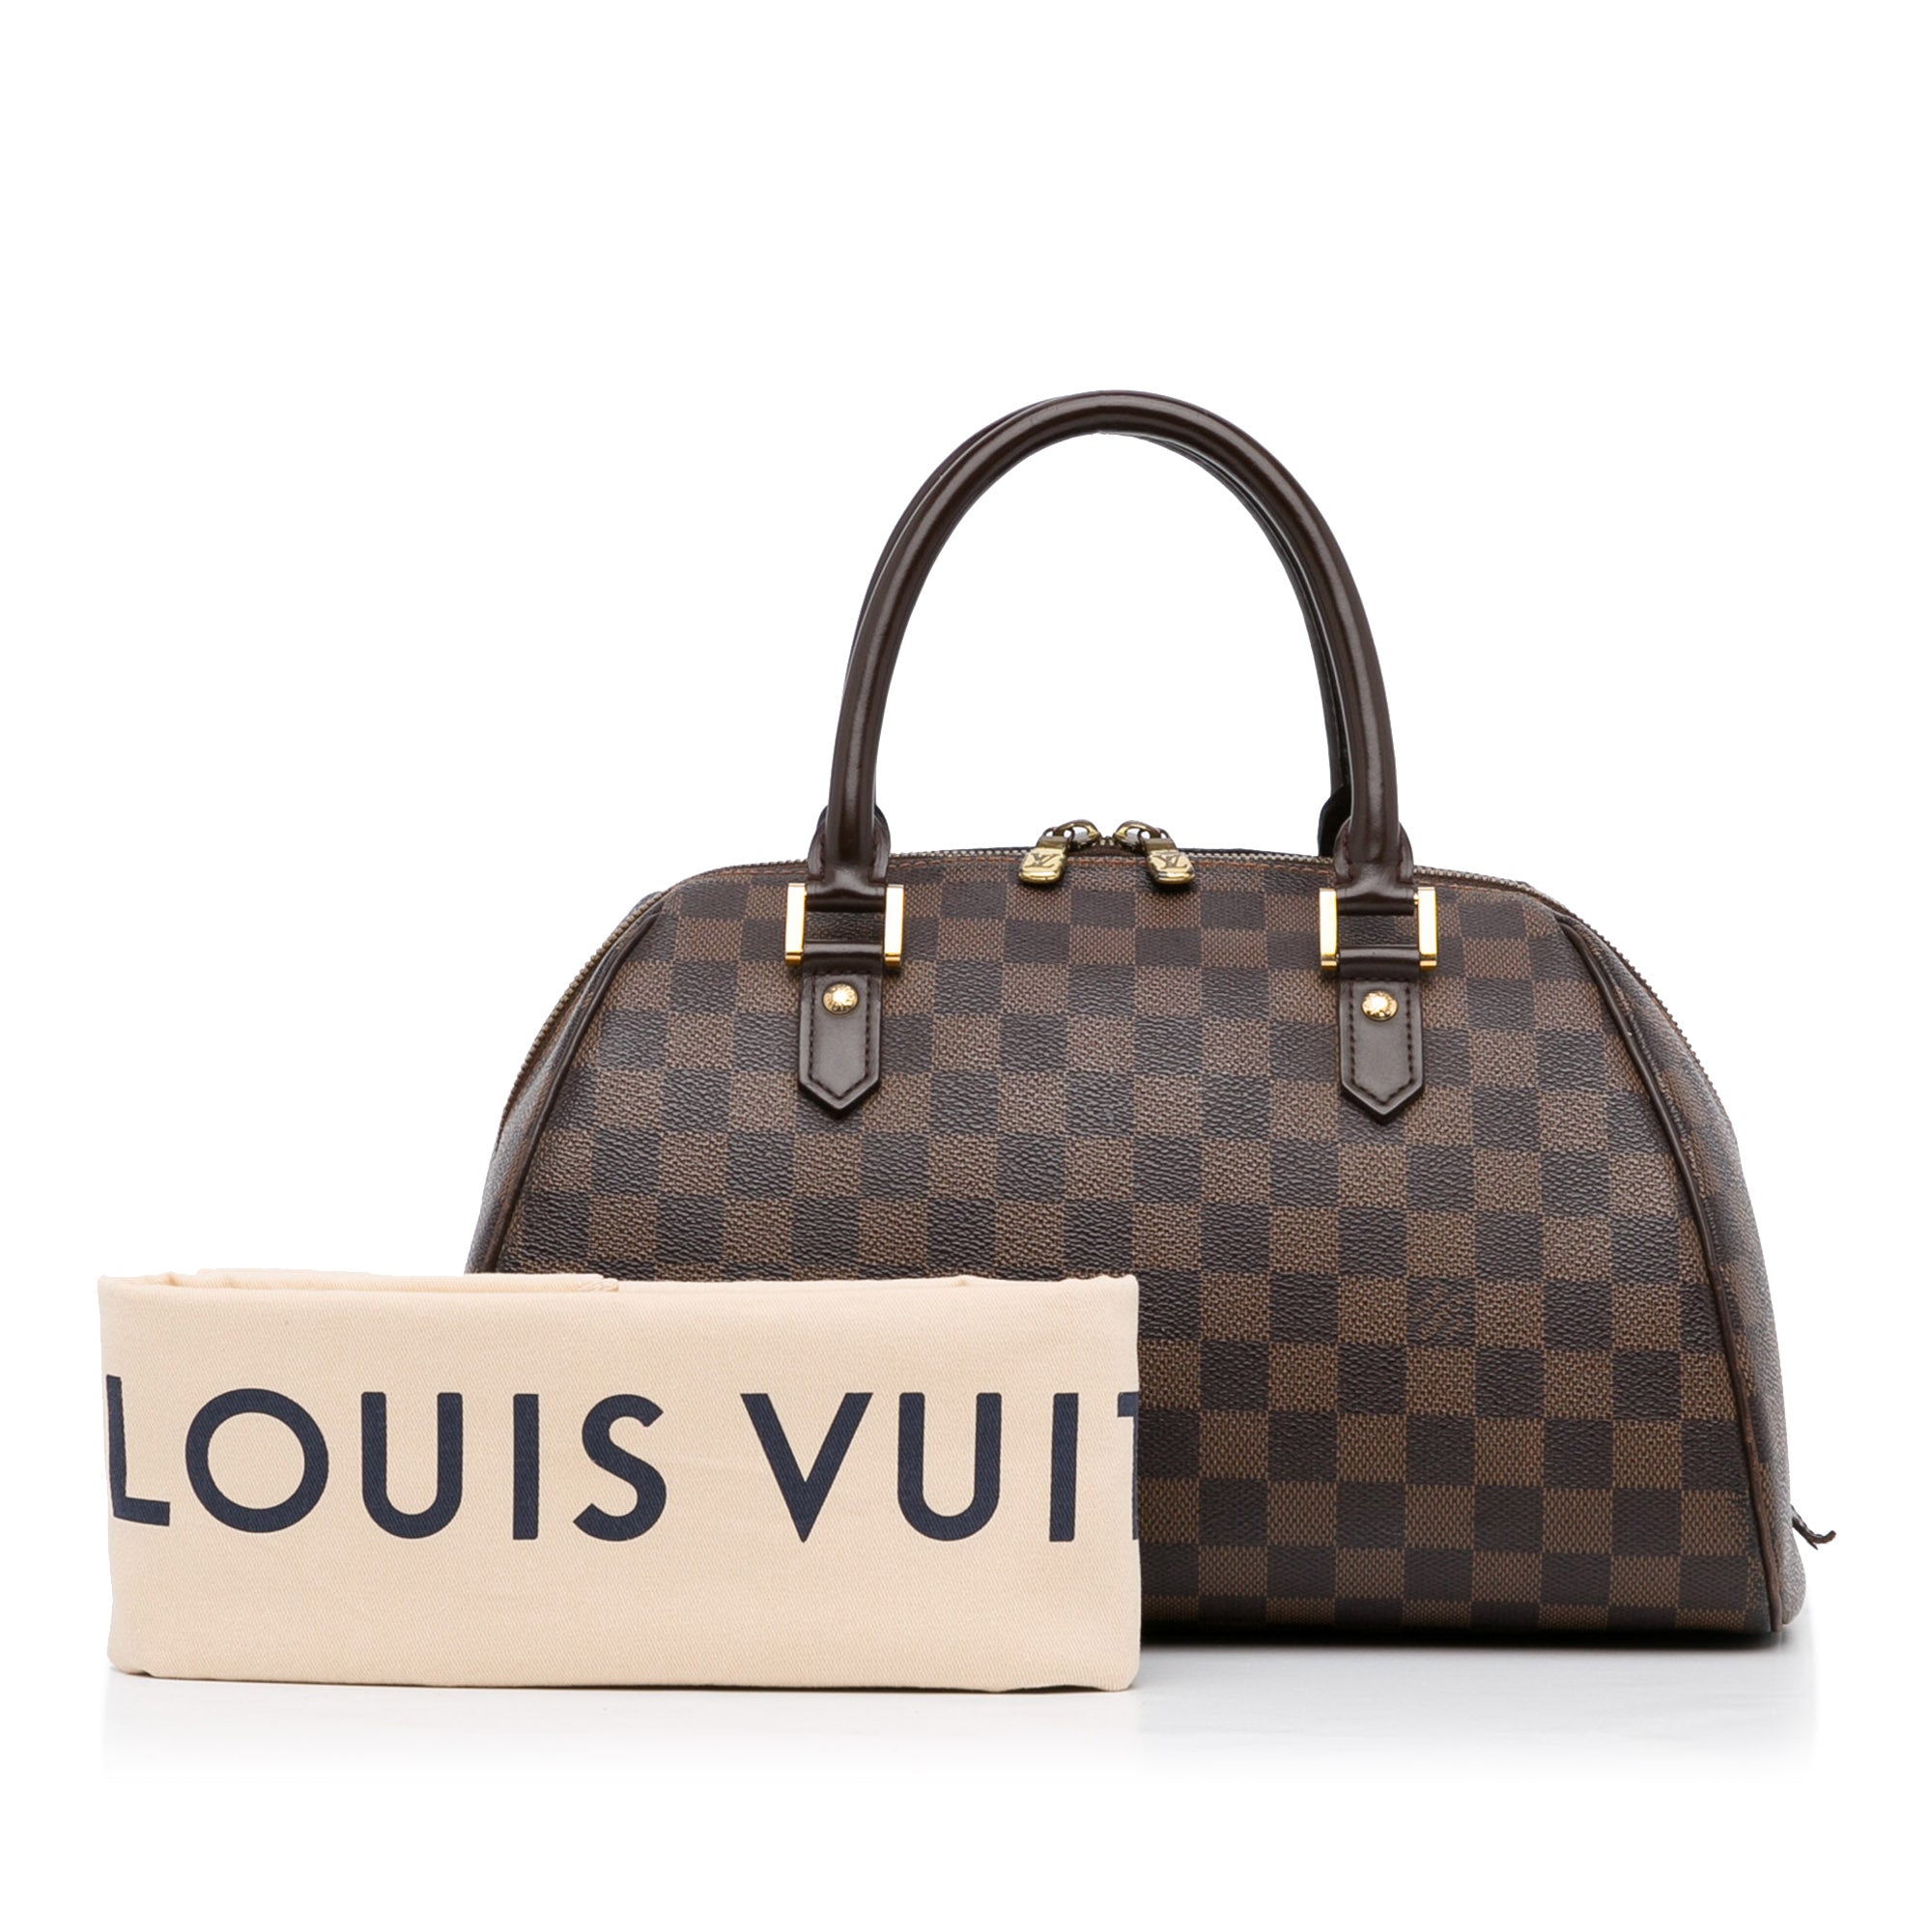 Louis Vuitton Ribera mm Damier Ebene Handbag in Brown | Lord & Taylor